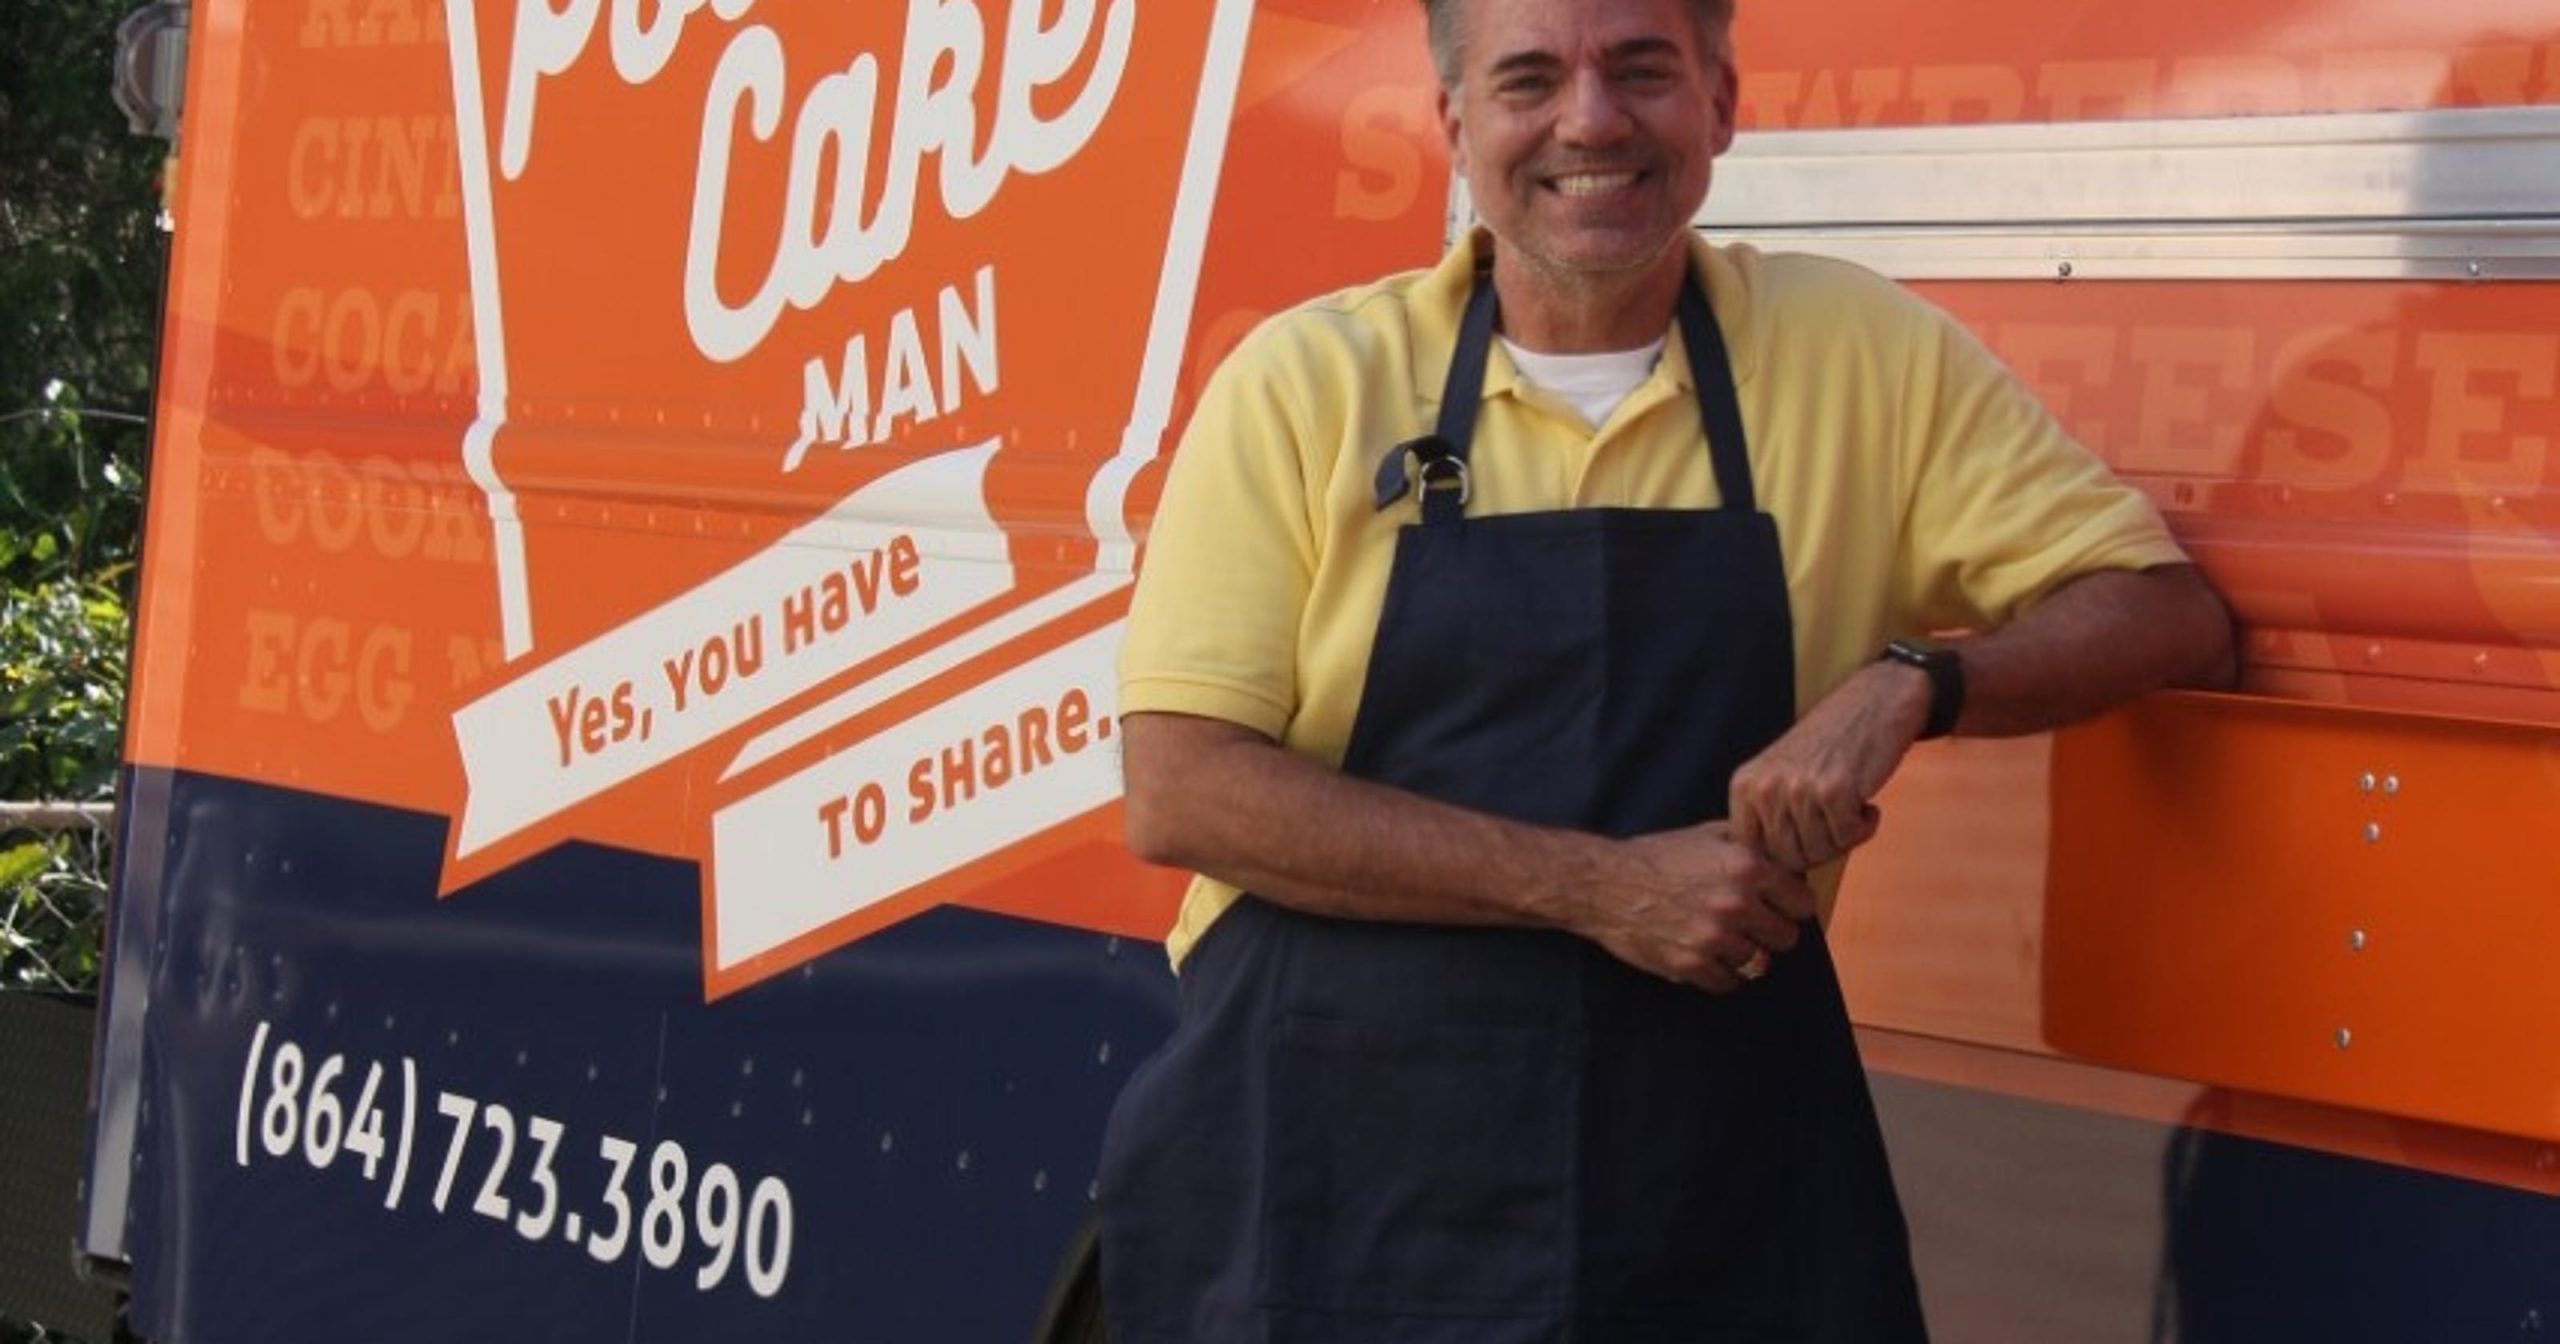 Pound Cake Man food truck brings joy